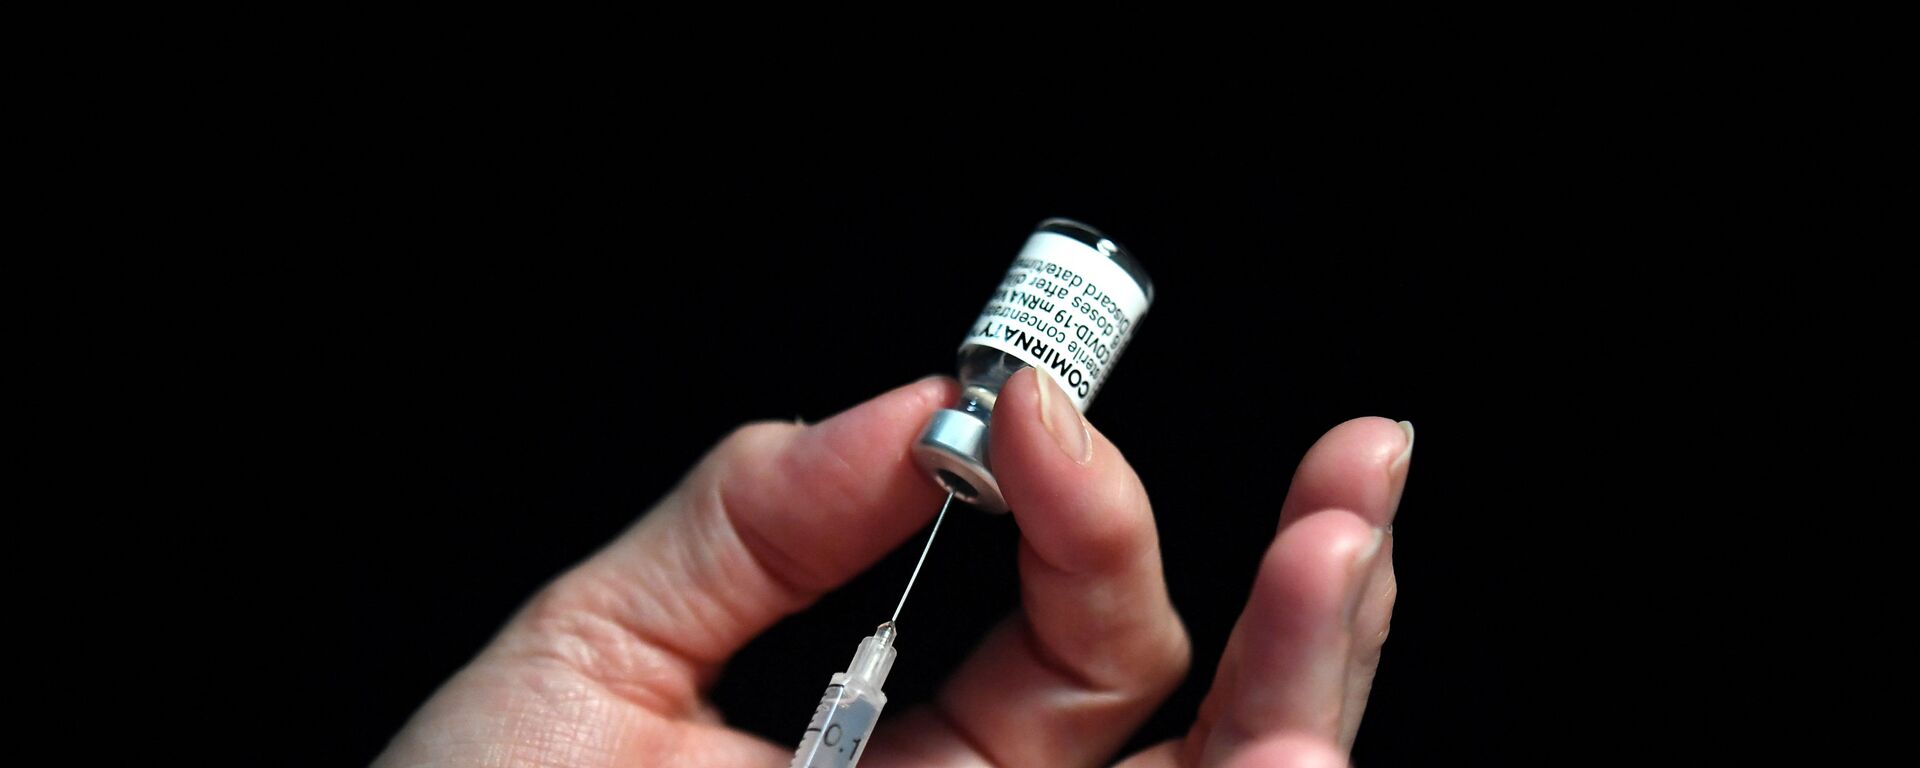 Une infirmière tient une seringue avec le vaccin de Pfizer, le 31 mai 2021 - Sputnik Afrique, 1920, 02.08.2021